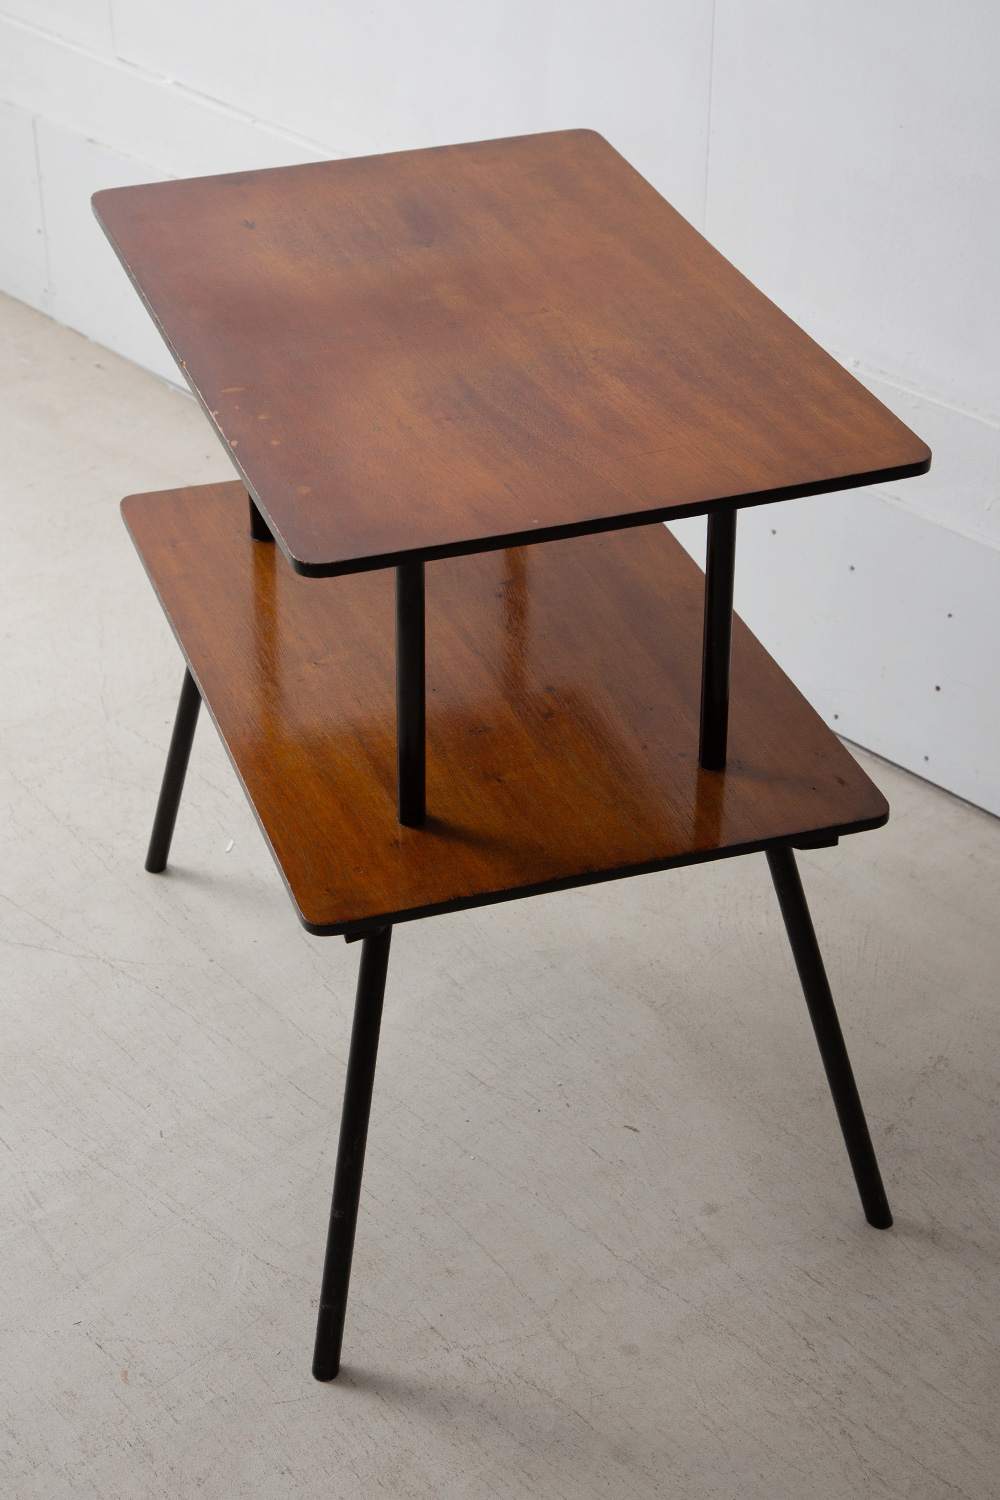 Vintage Display Table in Wood and Black